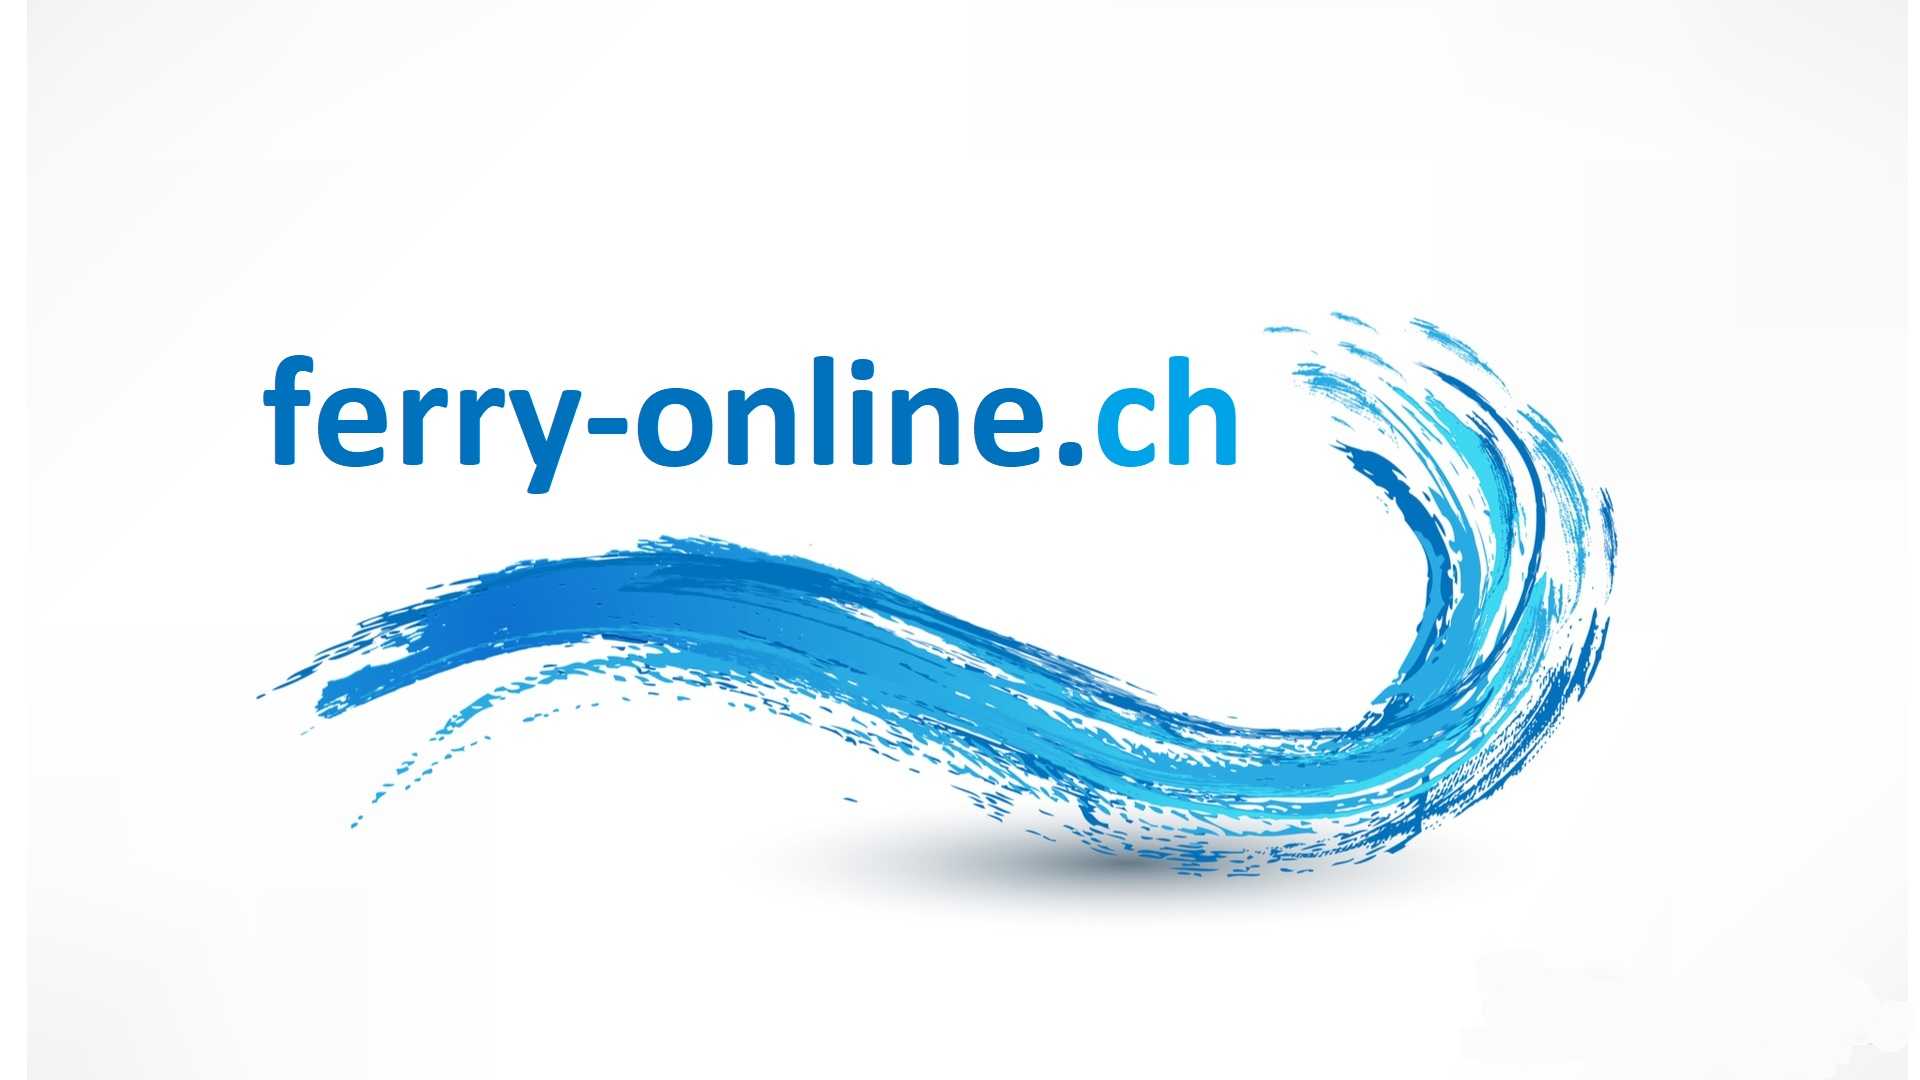 (c) Ferry-online.ch